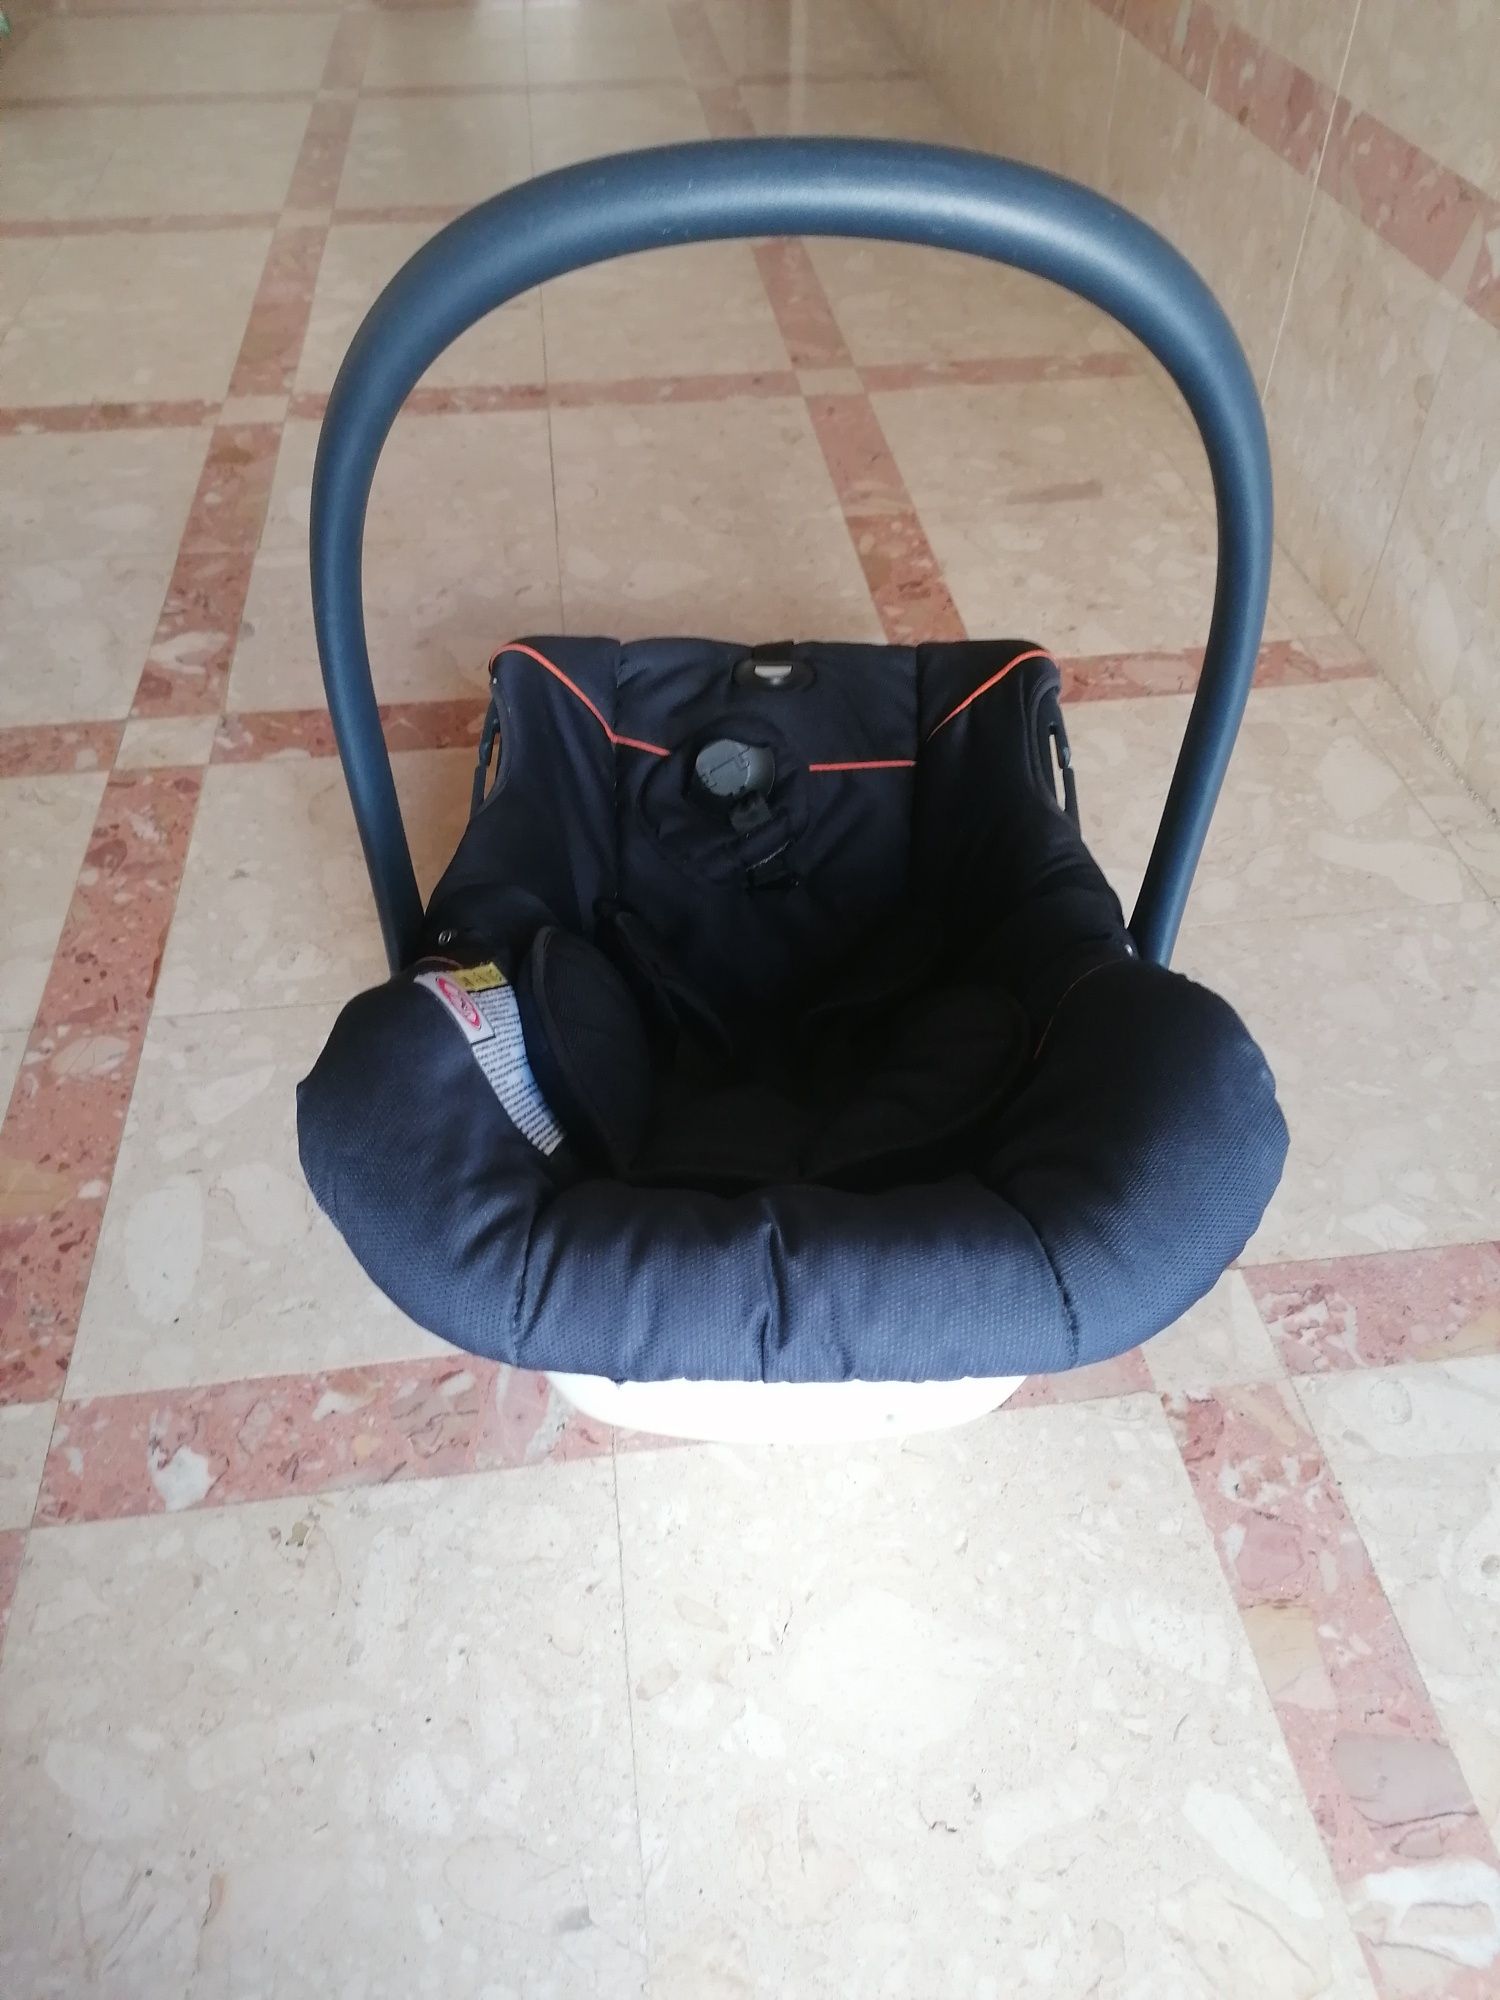 Cadeira Bébé "Ovo" Prénatal  (0 a 13 Kg)

Como novo